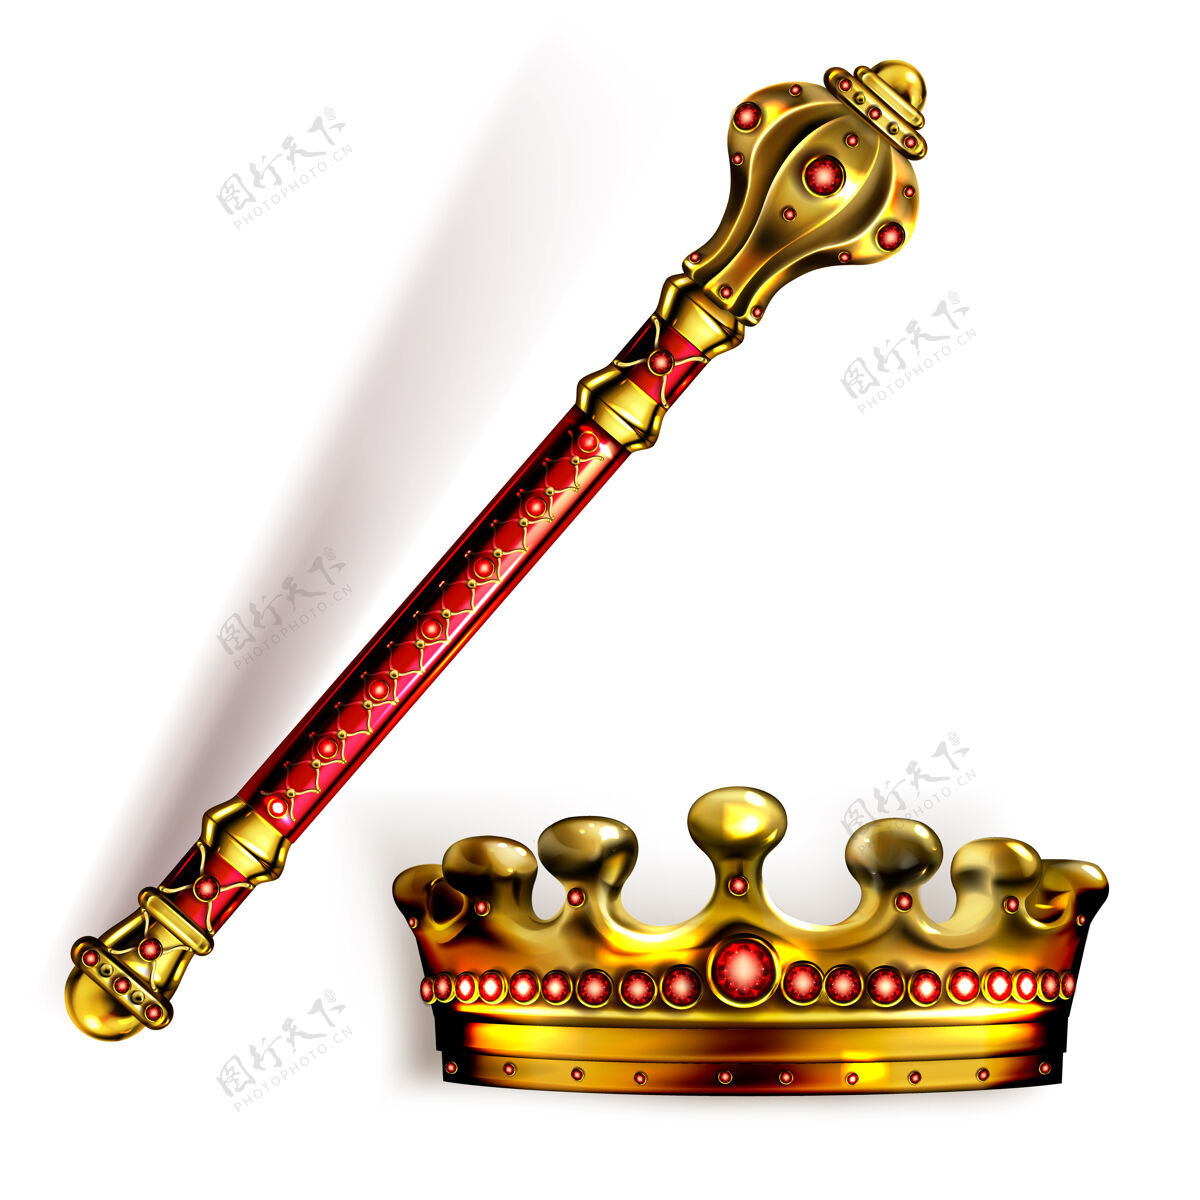 纹章黄金权杖和王冠为国王或王后 皇家魔杖和皇冠与红色宝石为君主黄金君主制皇帝符号 帝国加冕头饰 棒或锤 现实的三维矢量插图皇室皇帝珠宝